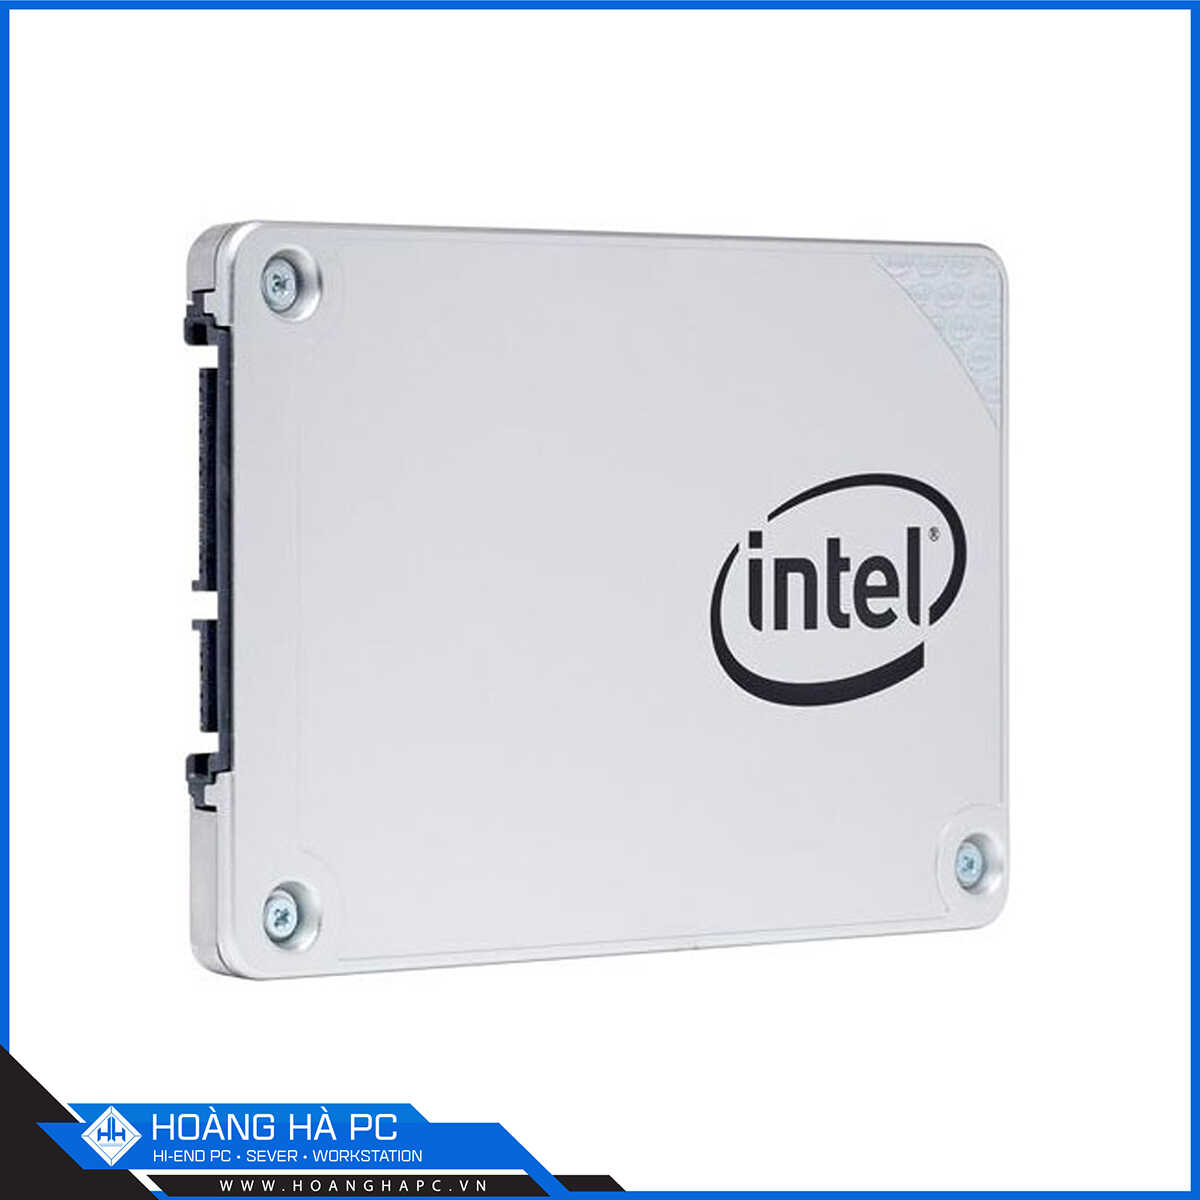 Ổ Cứng SSD Intel 540s Series 240GB 2.5 inch Sata 3 (Đọc 560MB/s - Ghi 480MB/s)